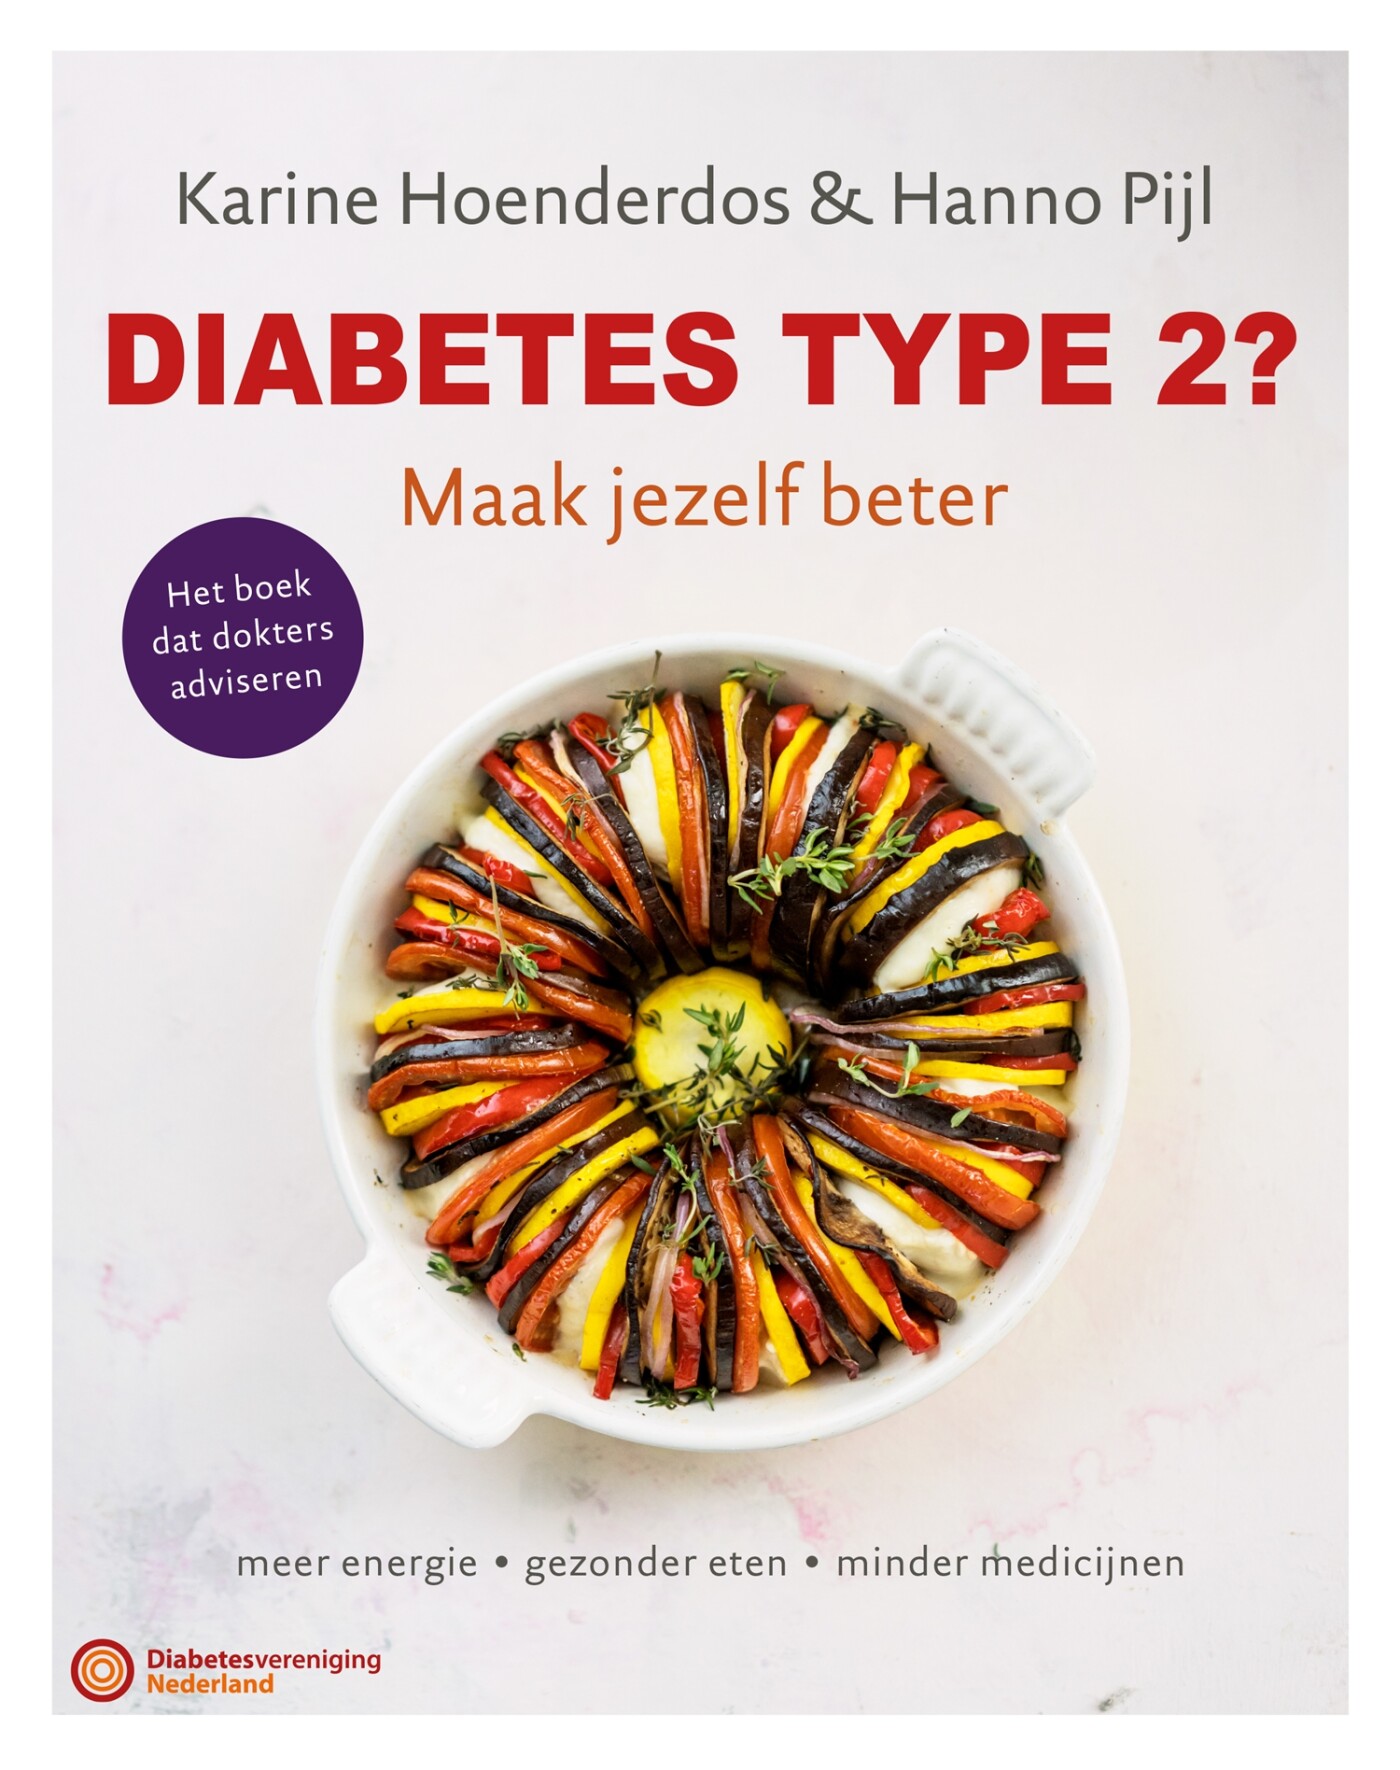 Diabetes type 2?  Maak jezelf beter